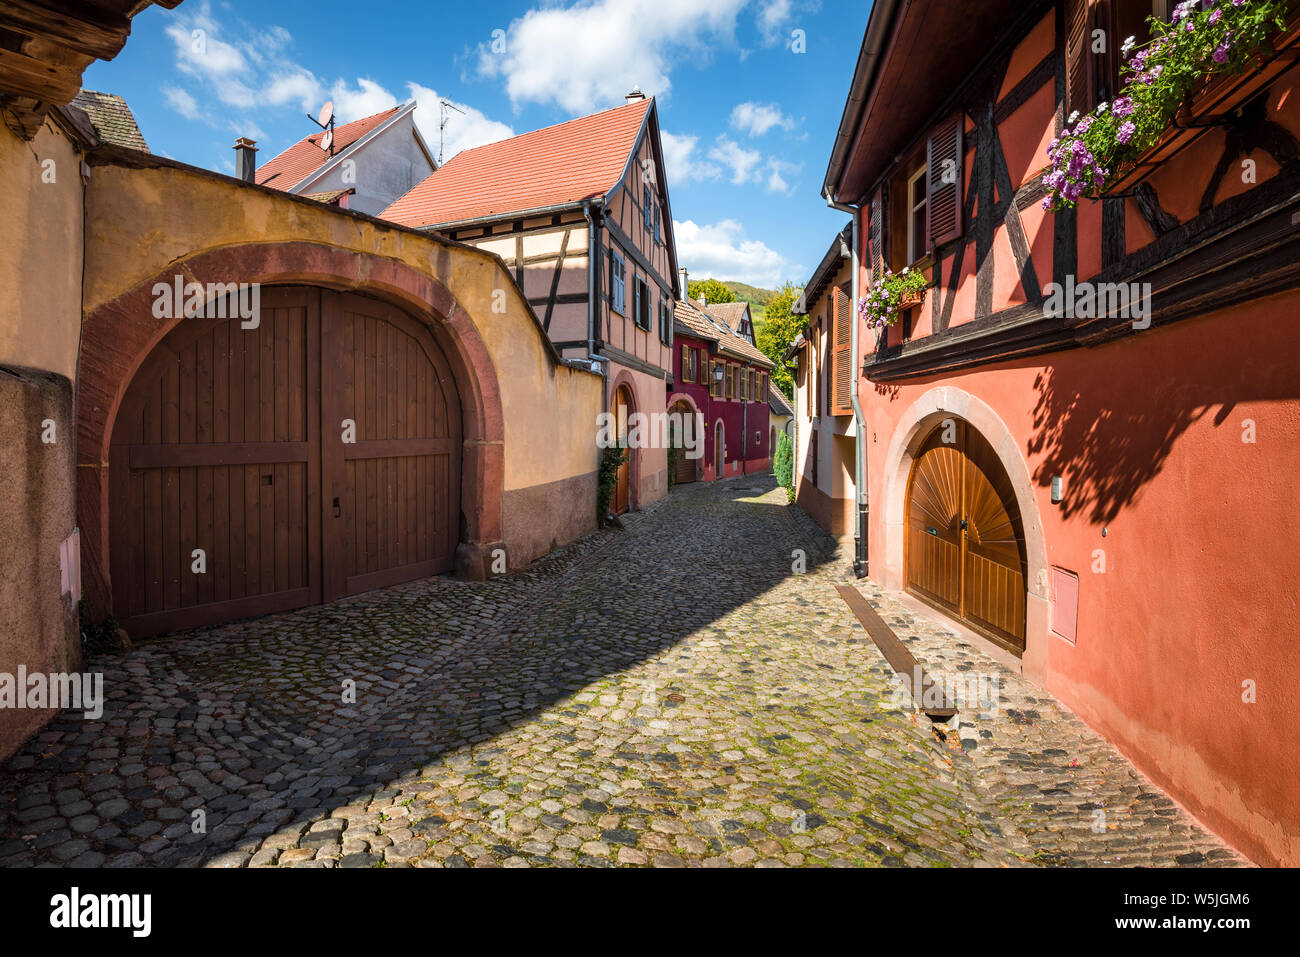 Colorido estrecho Lane en la aldea, Ammerschwihr, La Ruta del Vino de Alsacia, Francia, puertas de madera y decoración floral Foto de stock